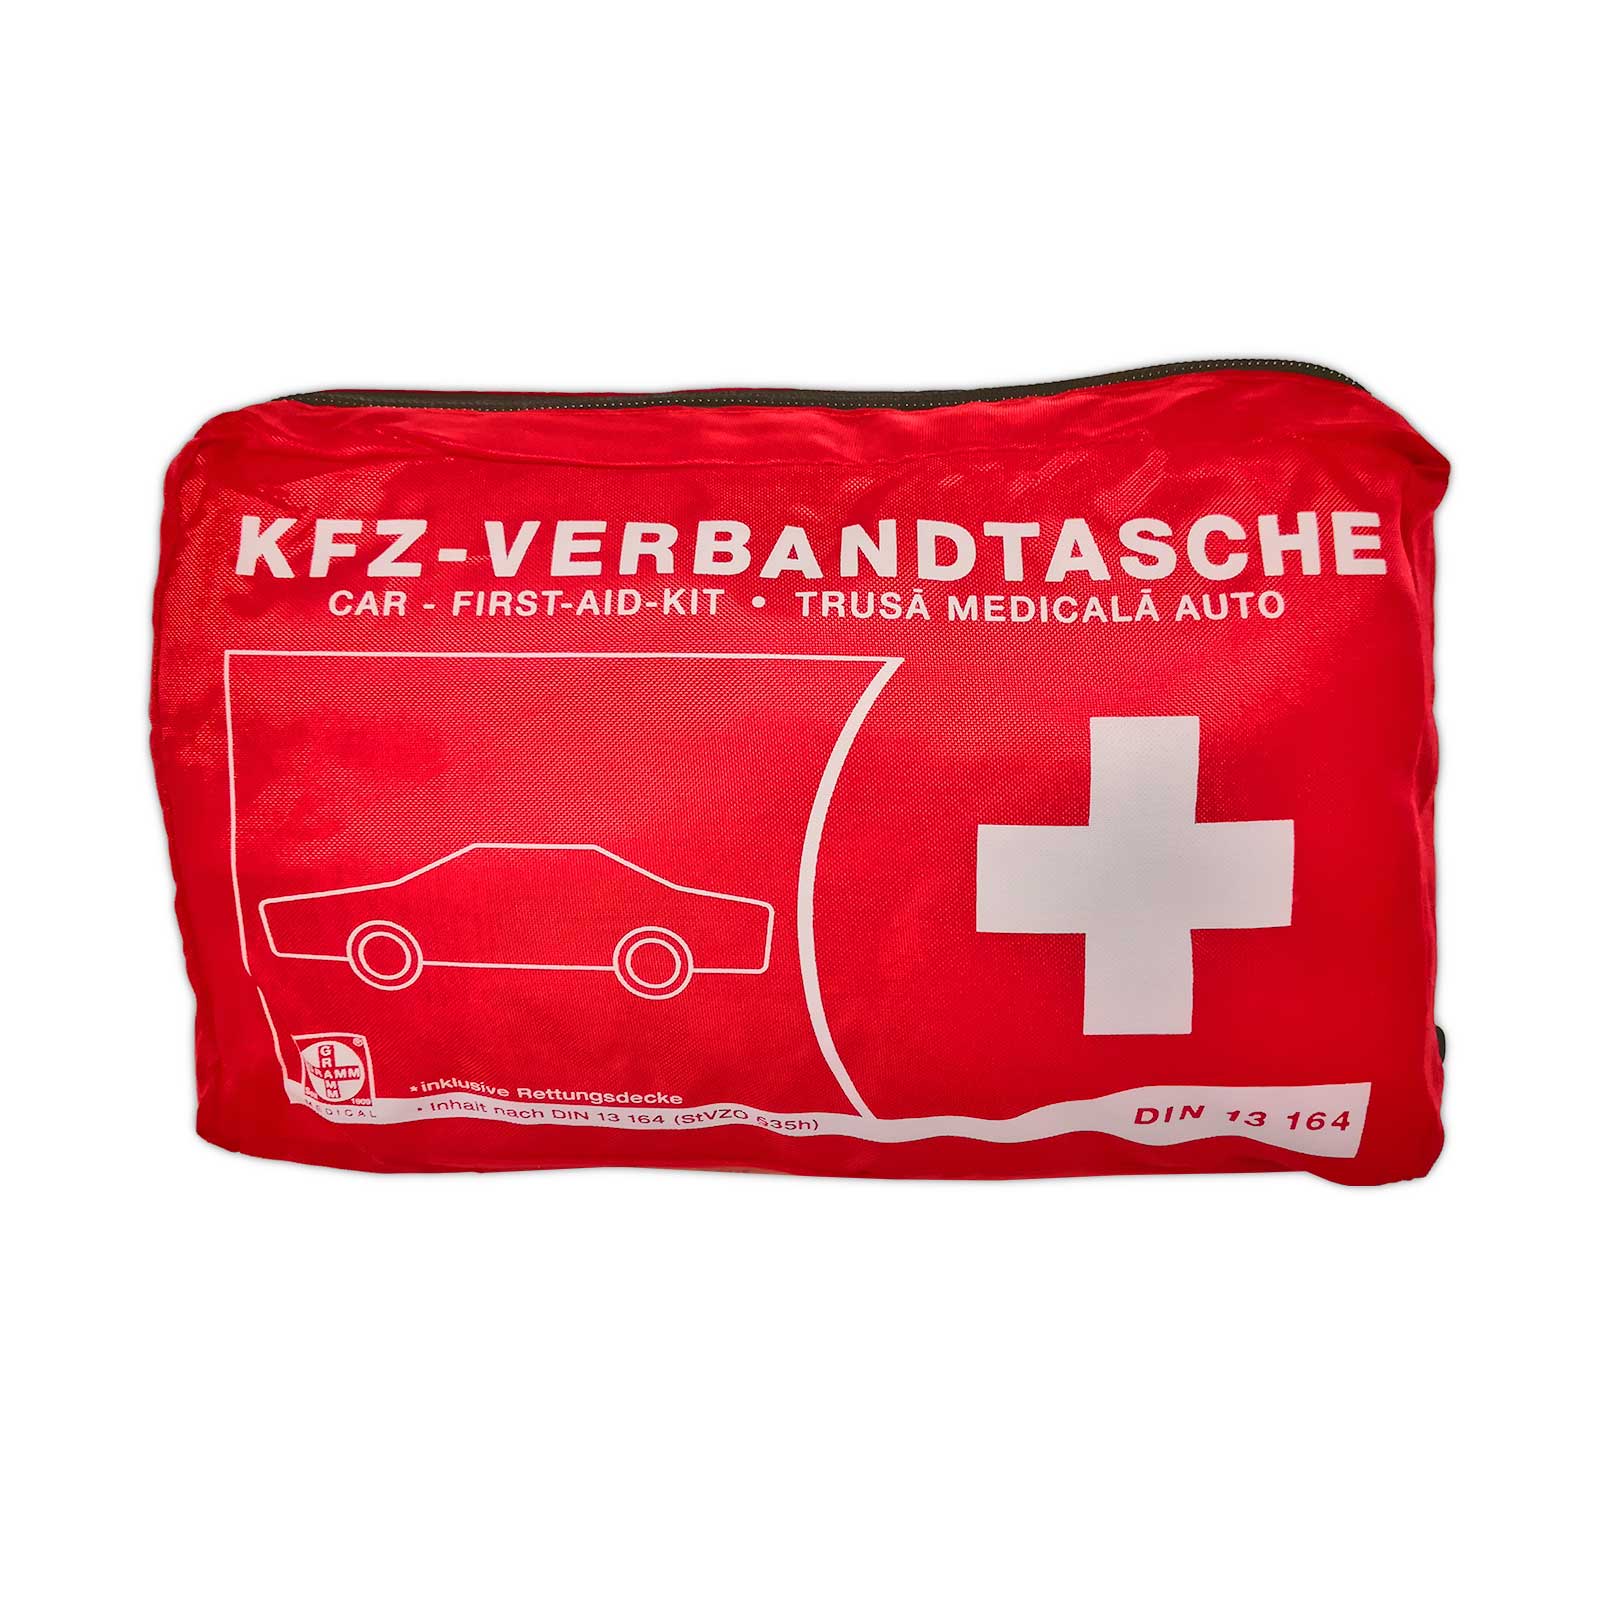 Car Safety KFZ-Verbandtasche